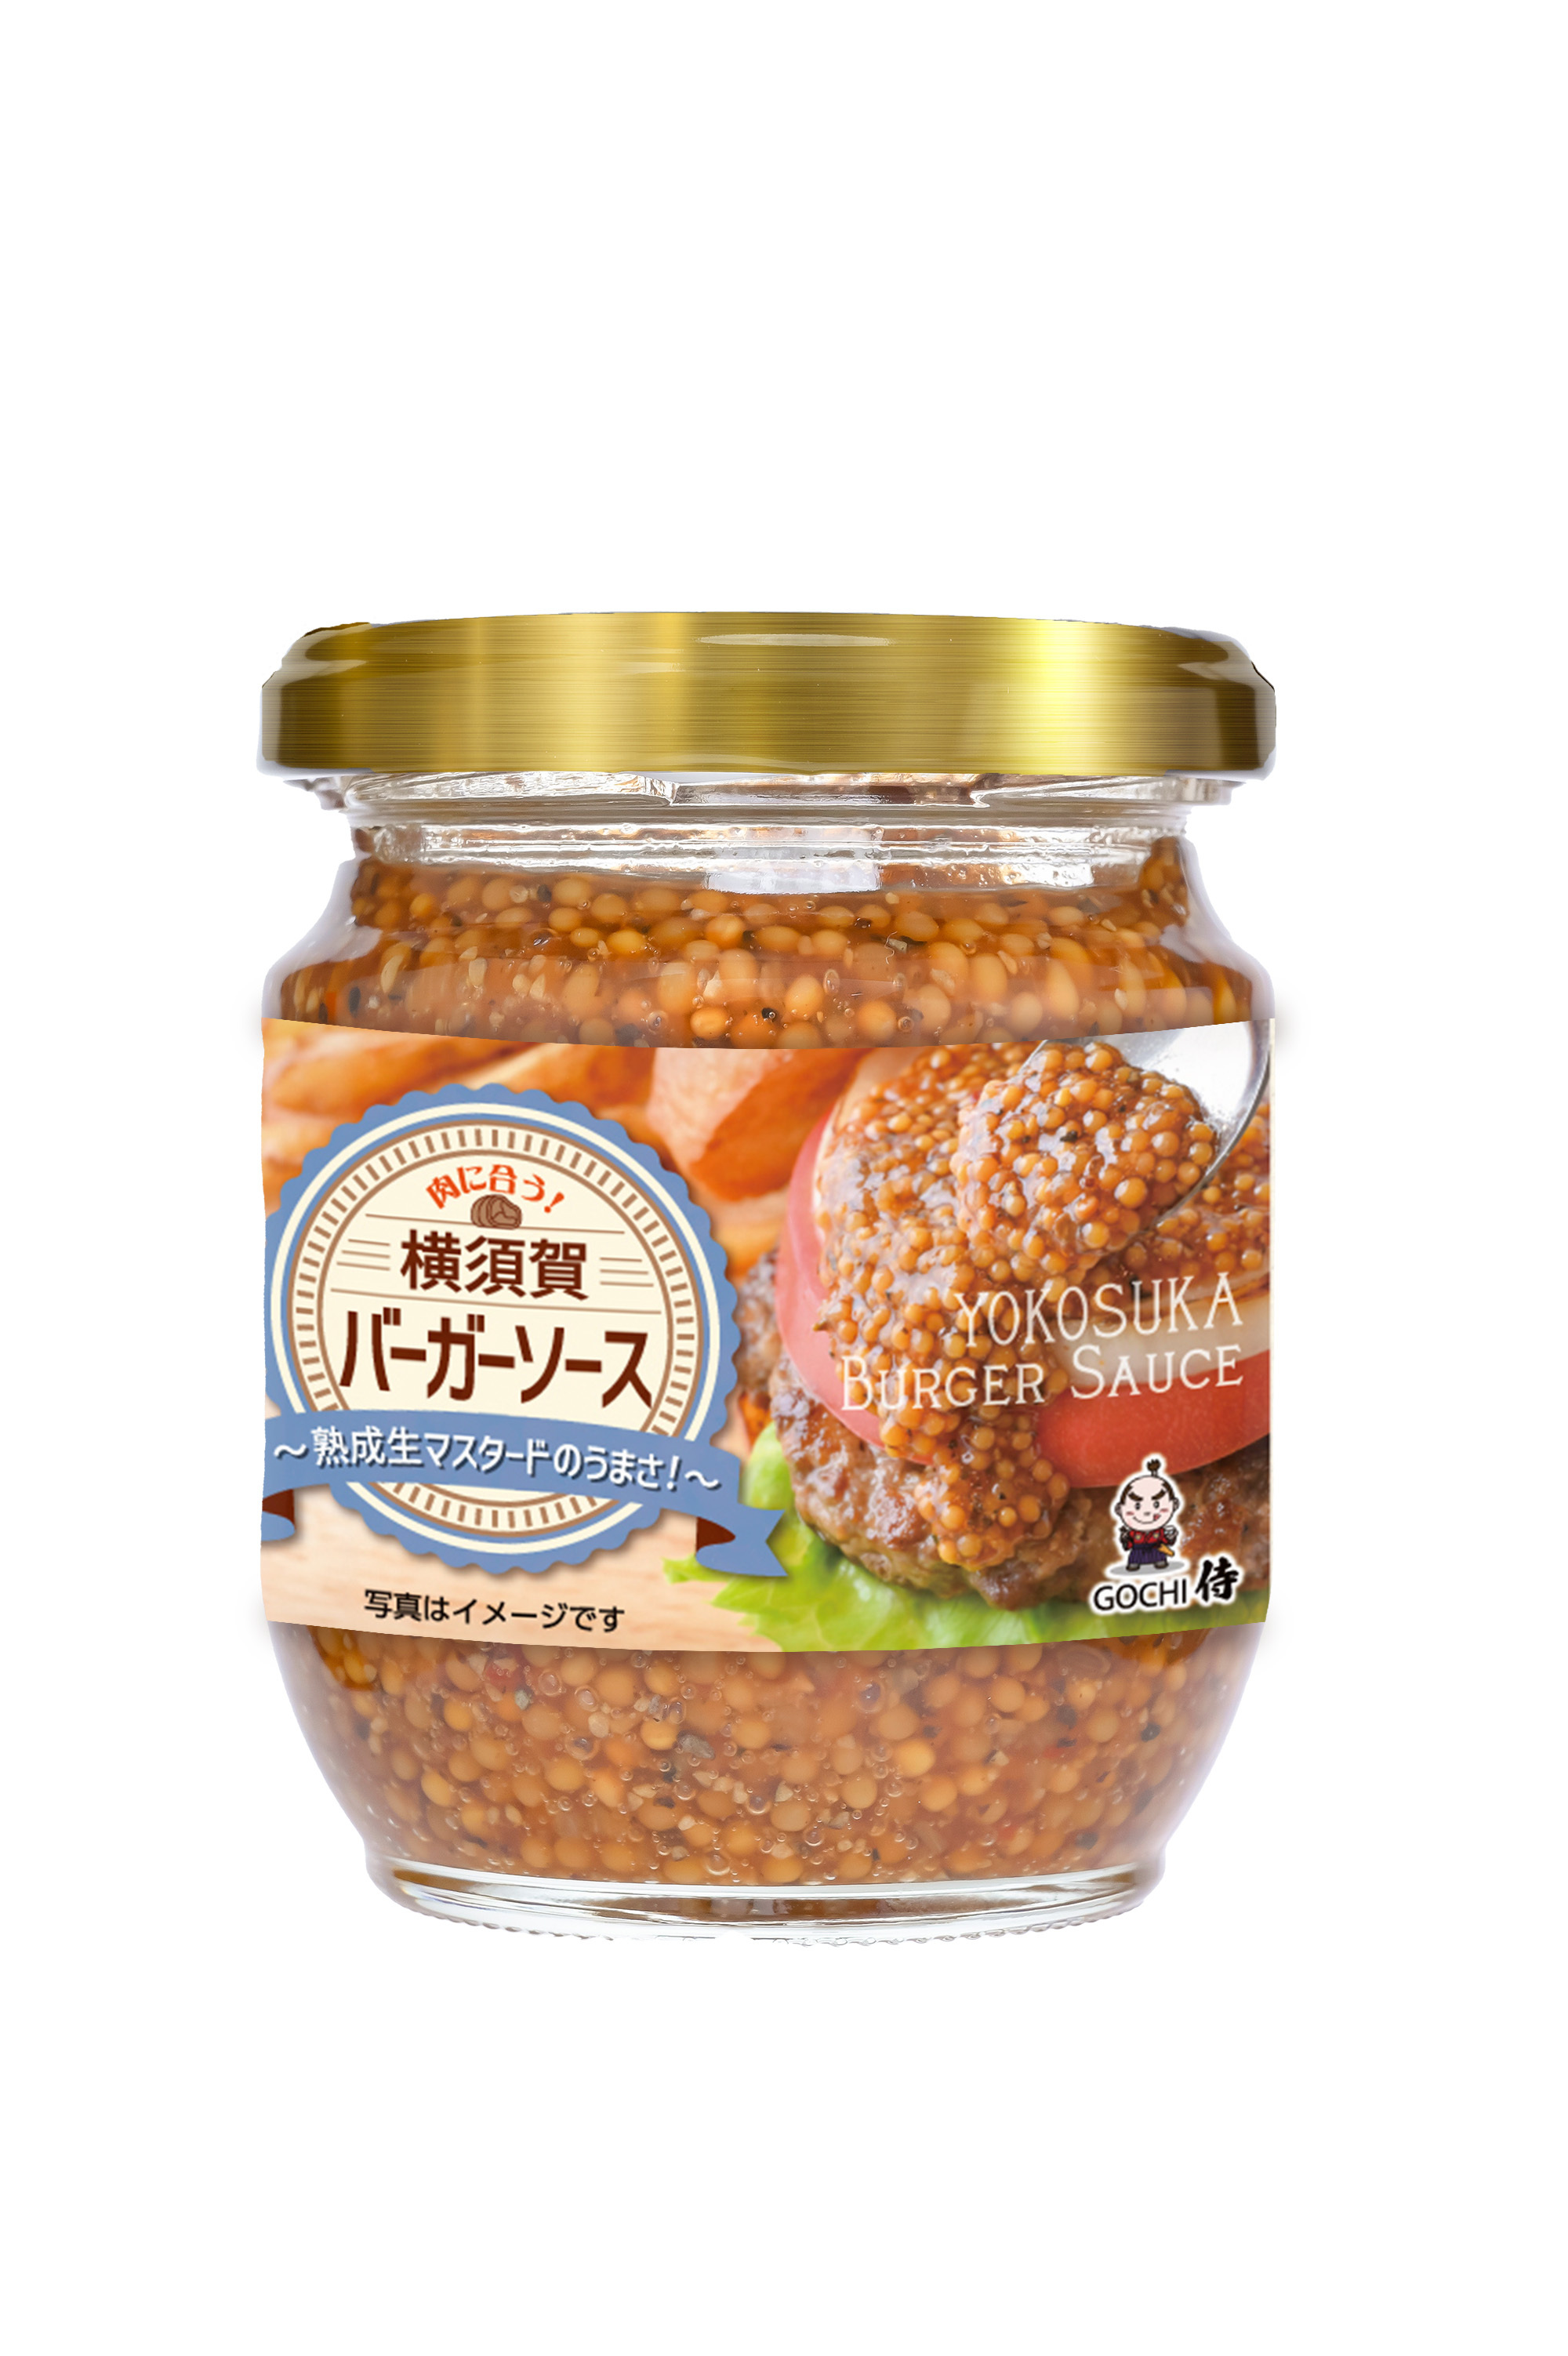 夏の乱れた腸内環境に！「納豆とお茶」が奇跡のコラボ 
新商品「菌活モリンガ キレイサポート」を7月24日に発売